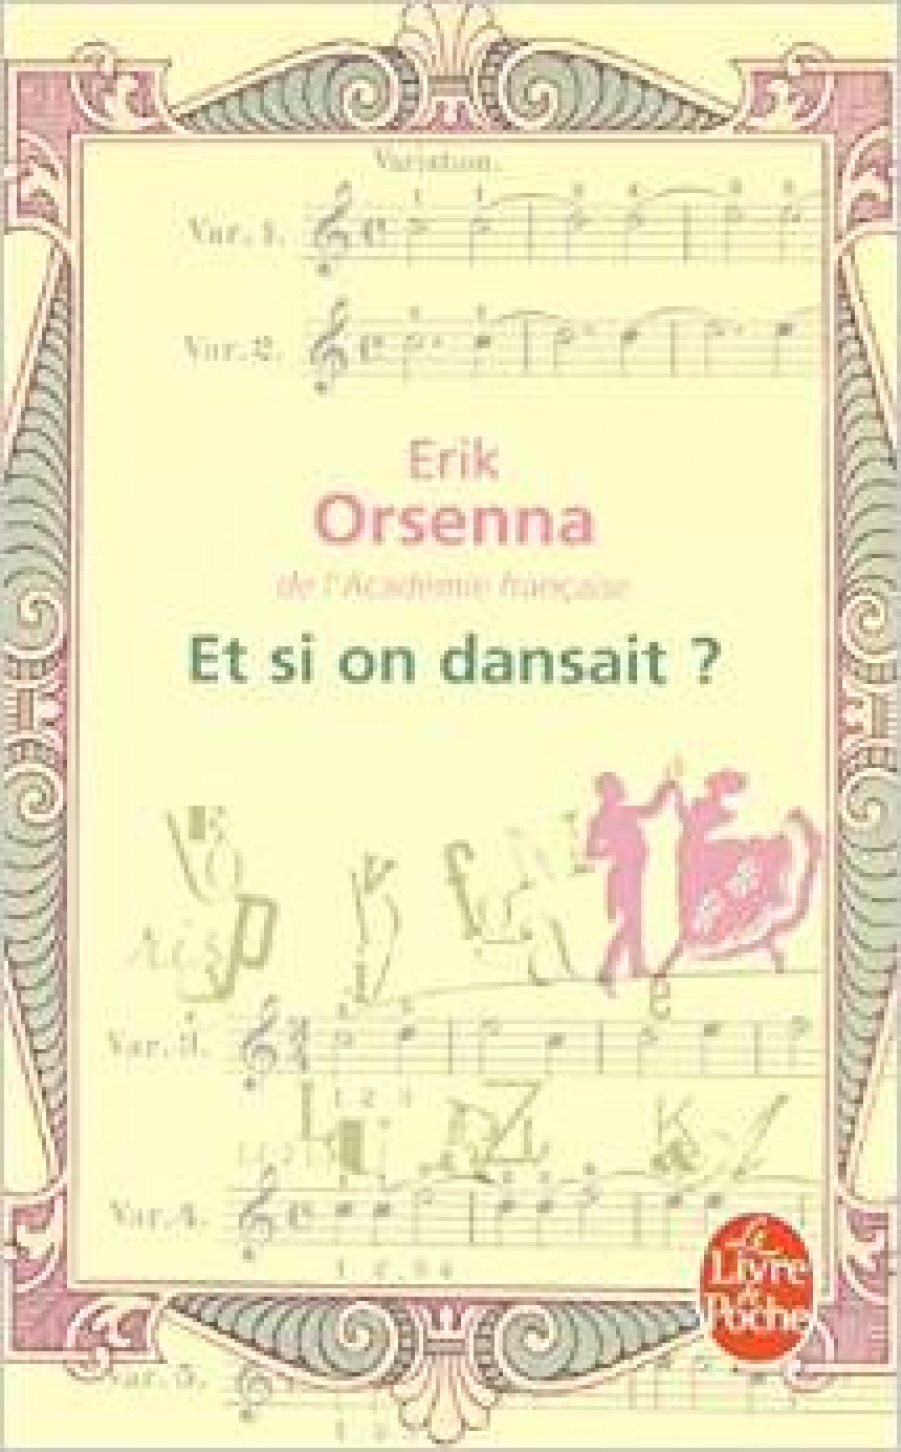 Erik, Orsenna Et si on dansait? 